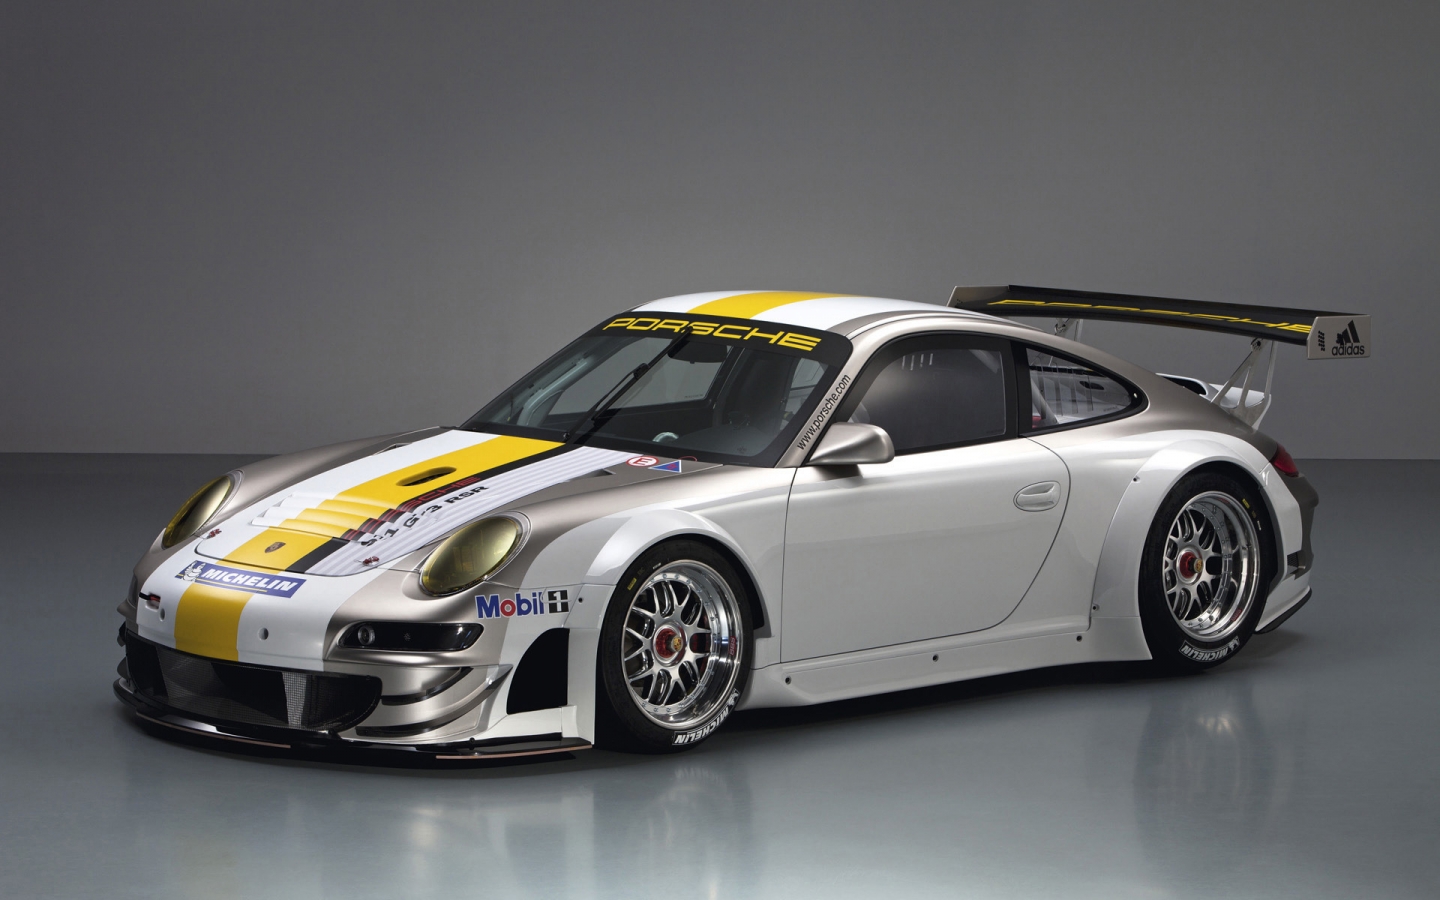 Porsche 911 GT3 RSR Studio for 1440 x 900 widescreen resolution